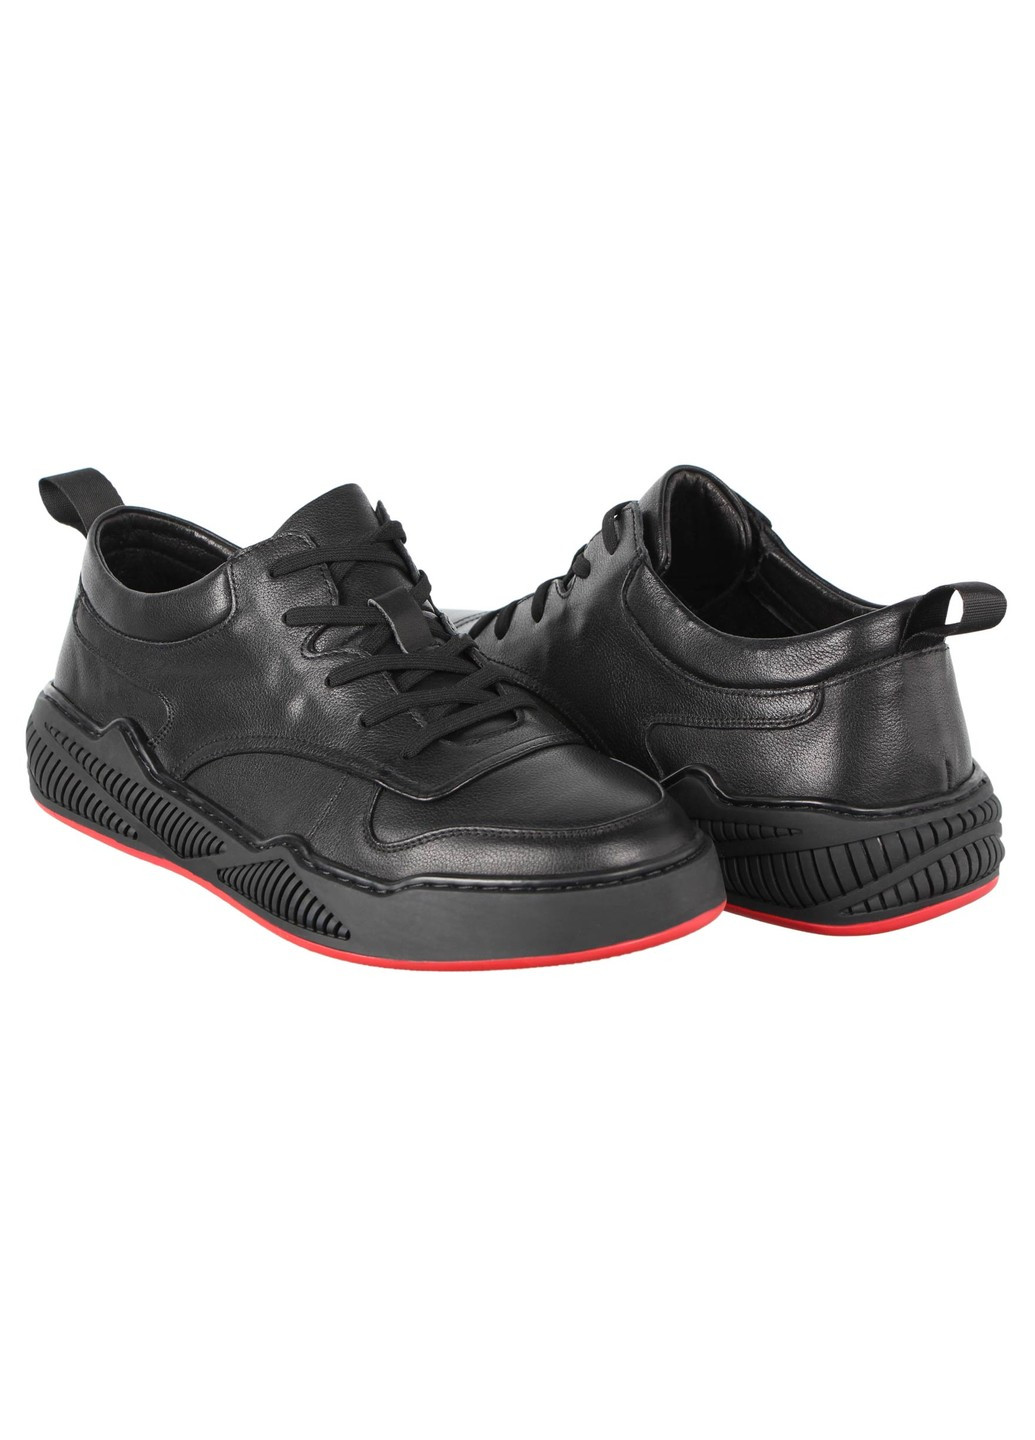 Черные демисезонные мужские кроссовки 197222 Buts